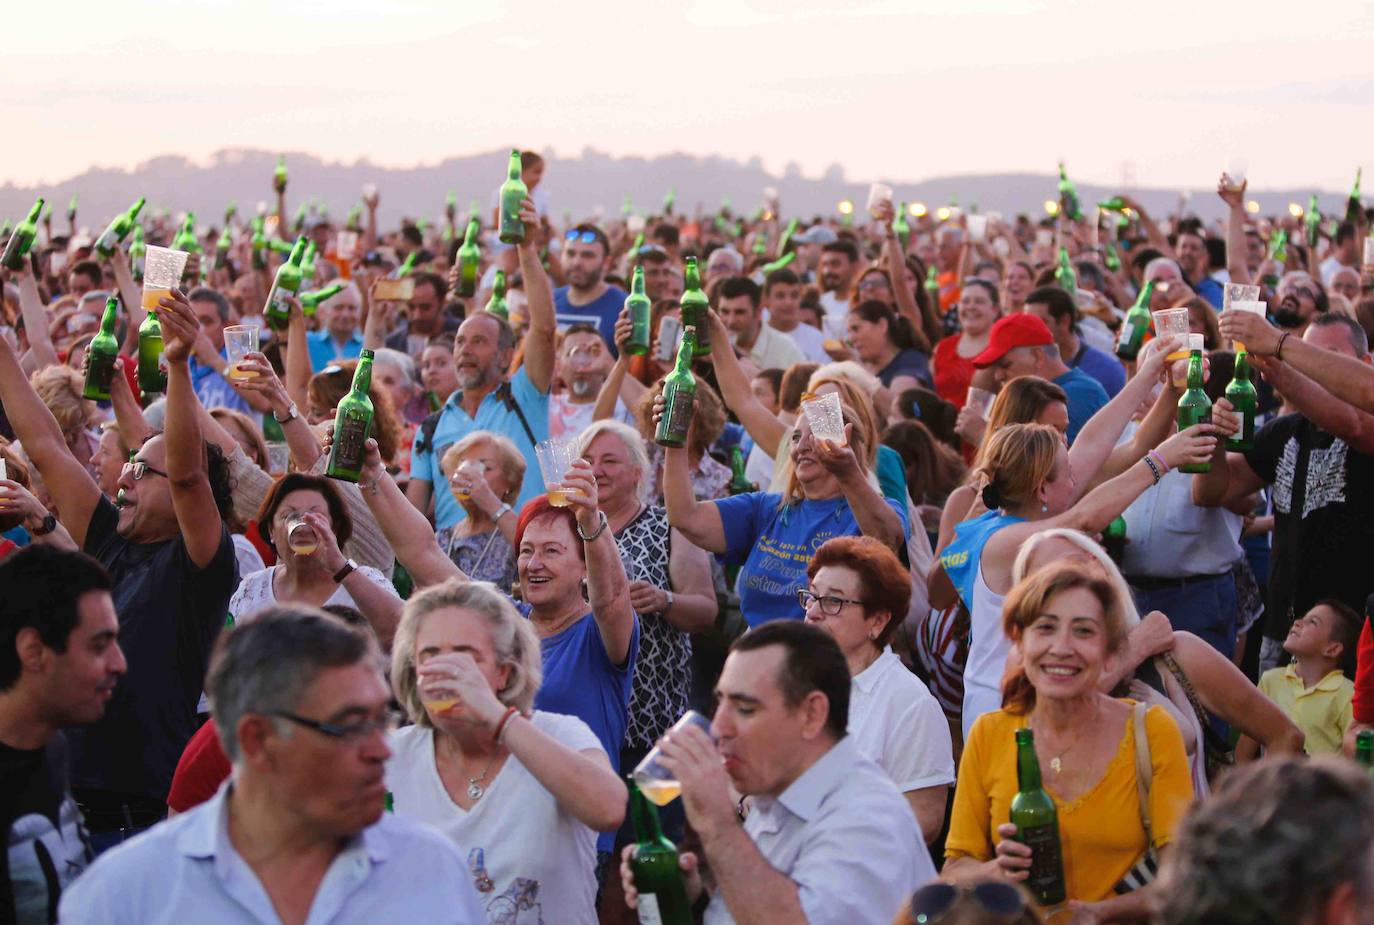 La playa de Poniente ha acogido un nuevo récord en una de las actividades más multitudinarias del verano gijonés. 